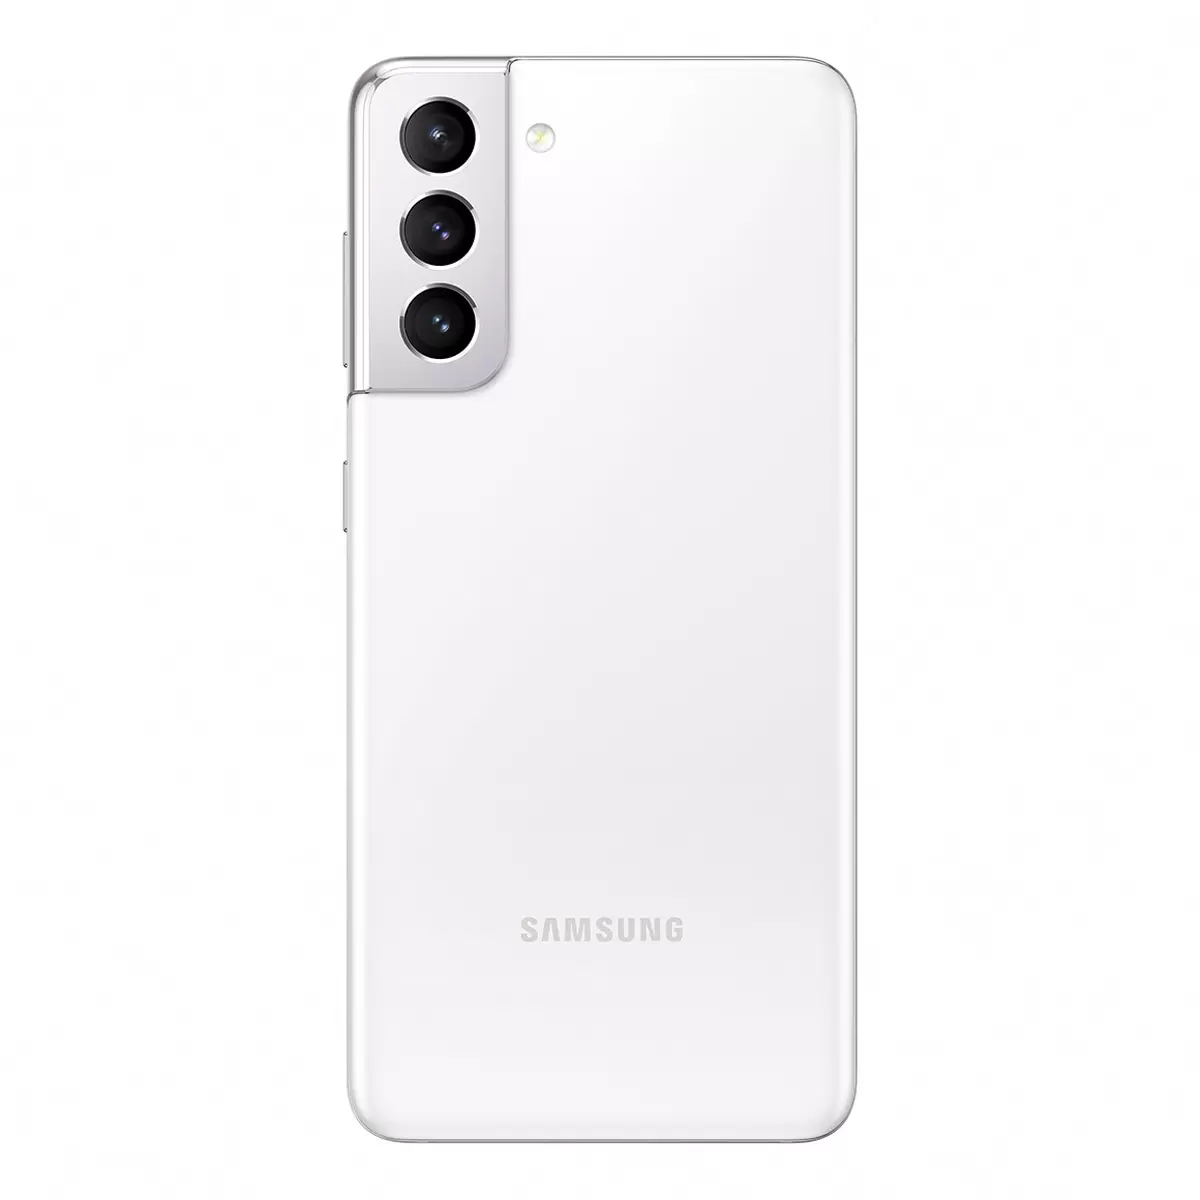 Samsung Galaxy S21 Color Blanco 128 GB